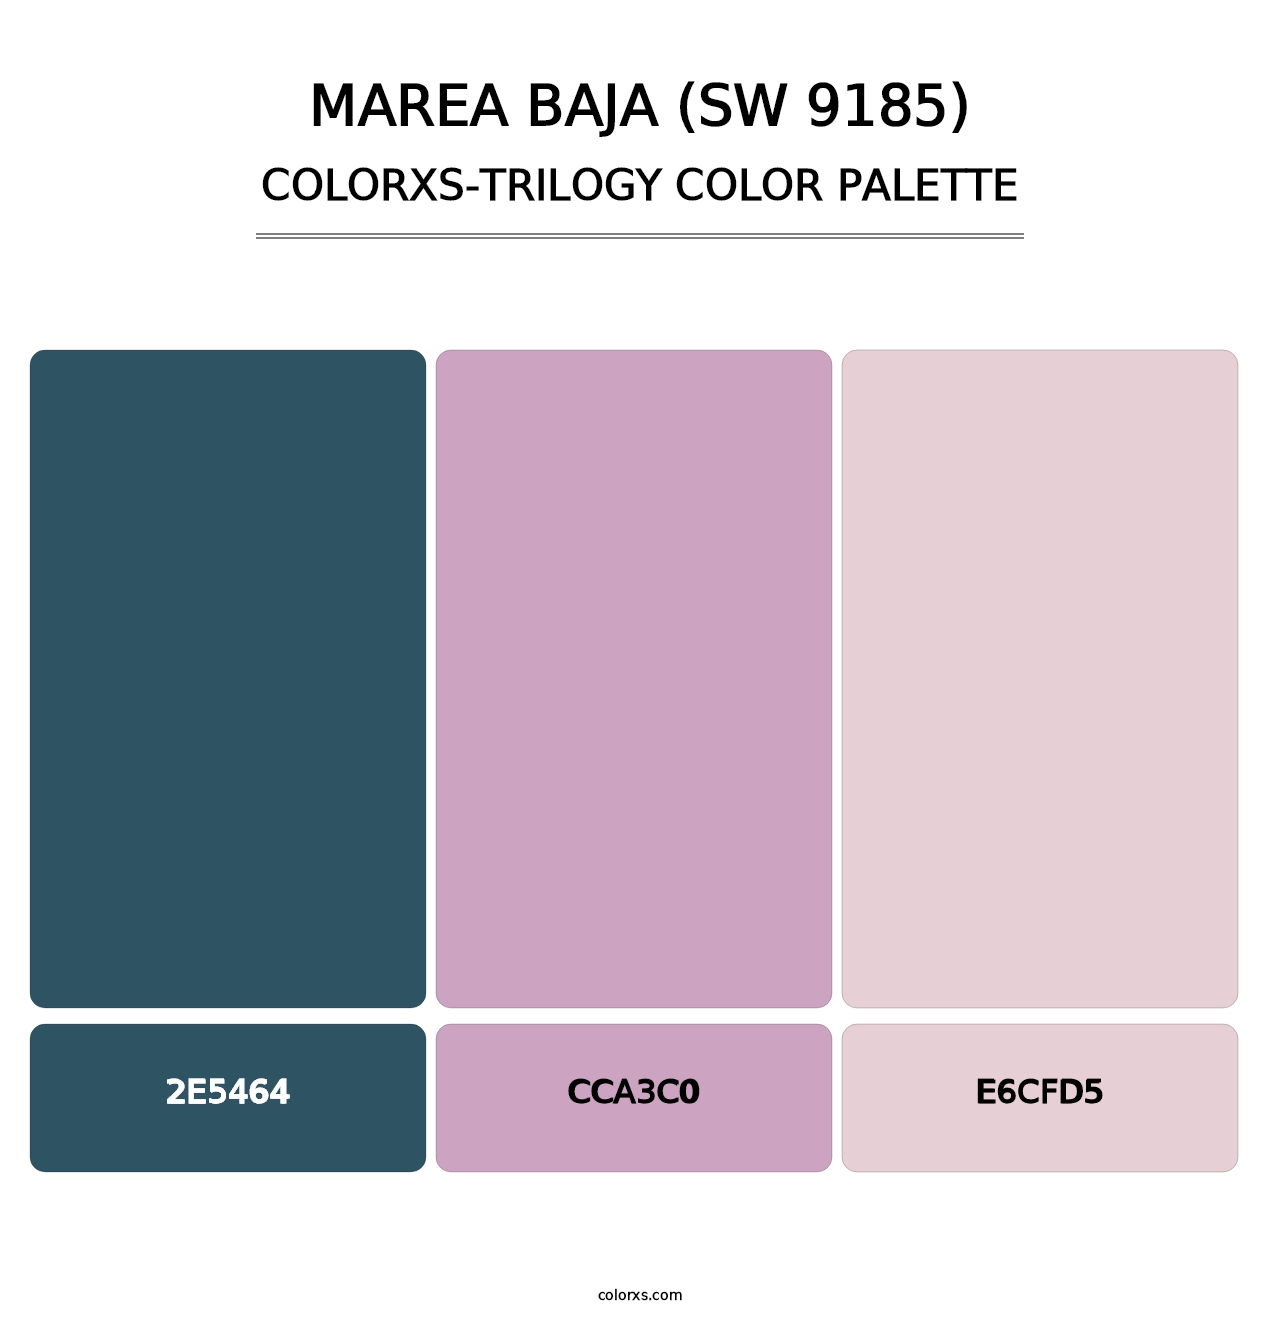 Marea Baja (SW 9185) - Colorxs Trilogy Palette